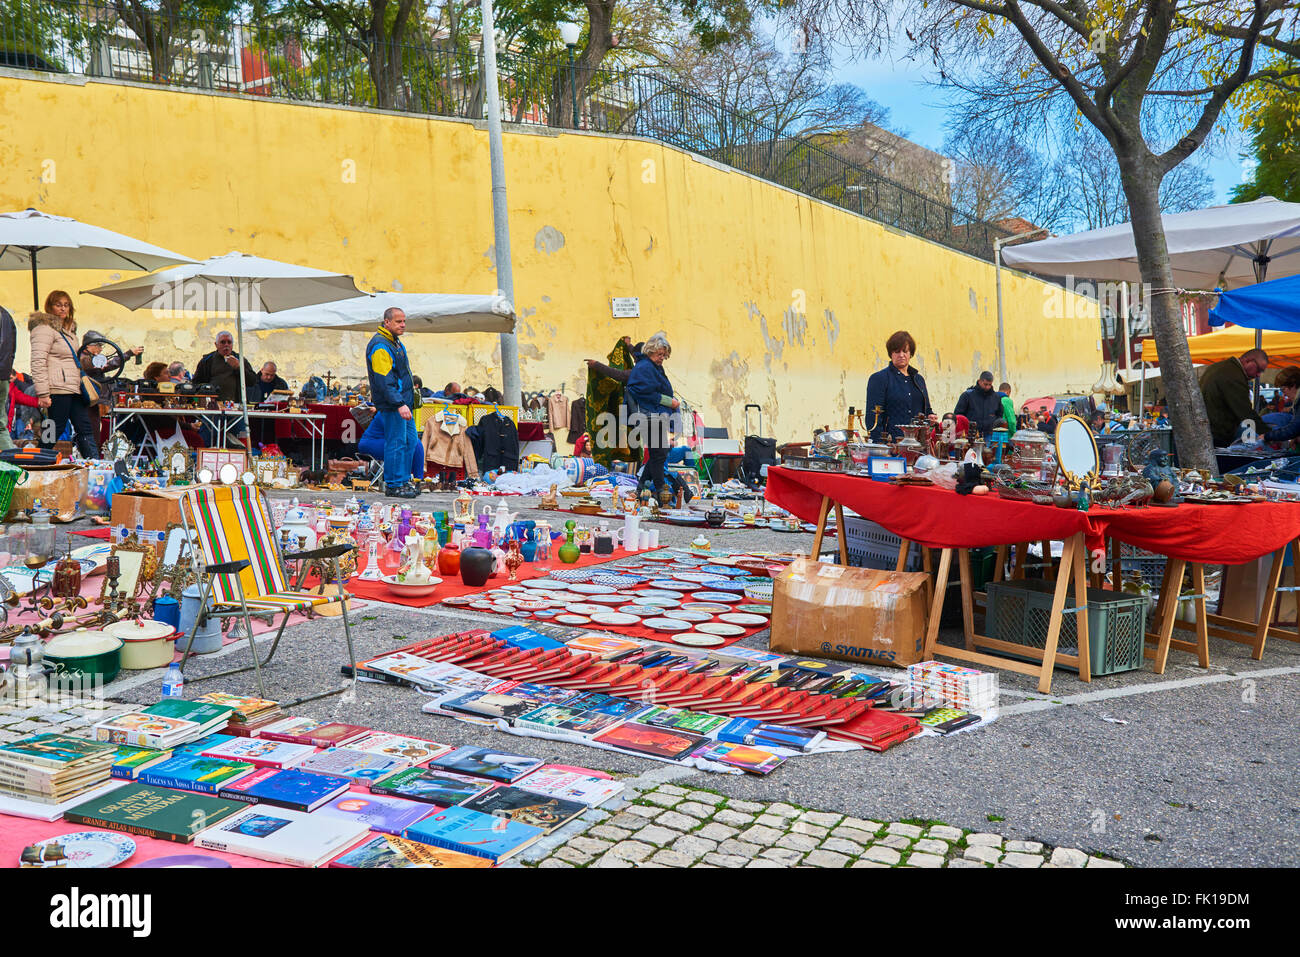 Feira da Ladra Flohmarkt oder Thieves Market in der Alfama Viertel, Lissabon, Portugal, Europa Stockfoto